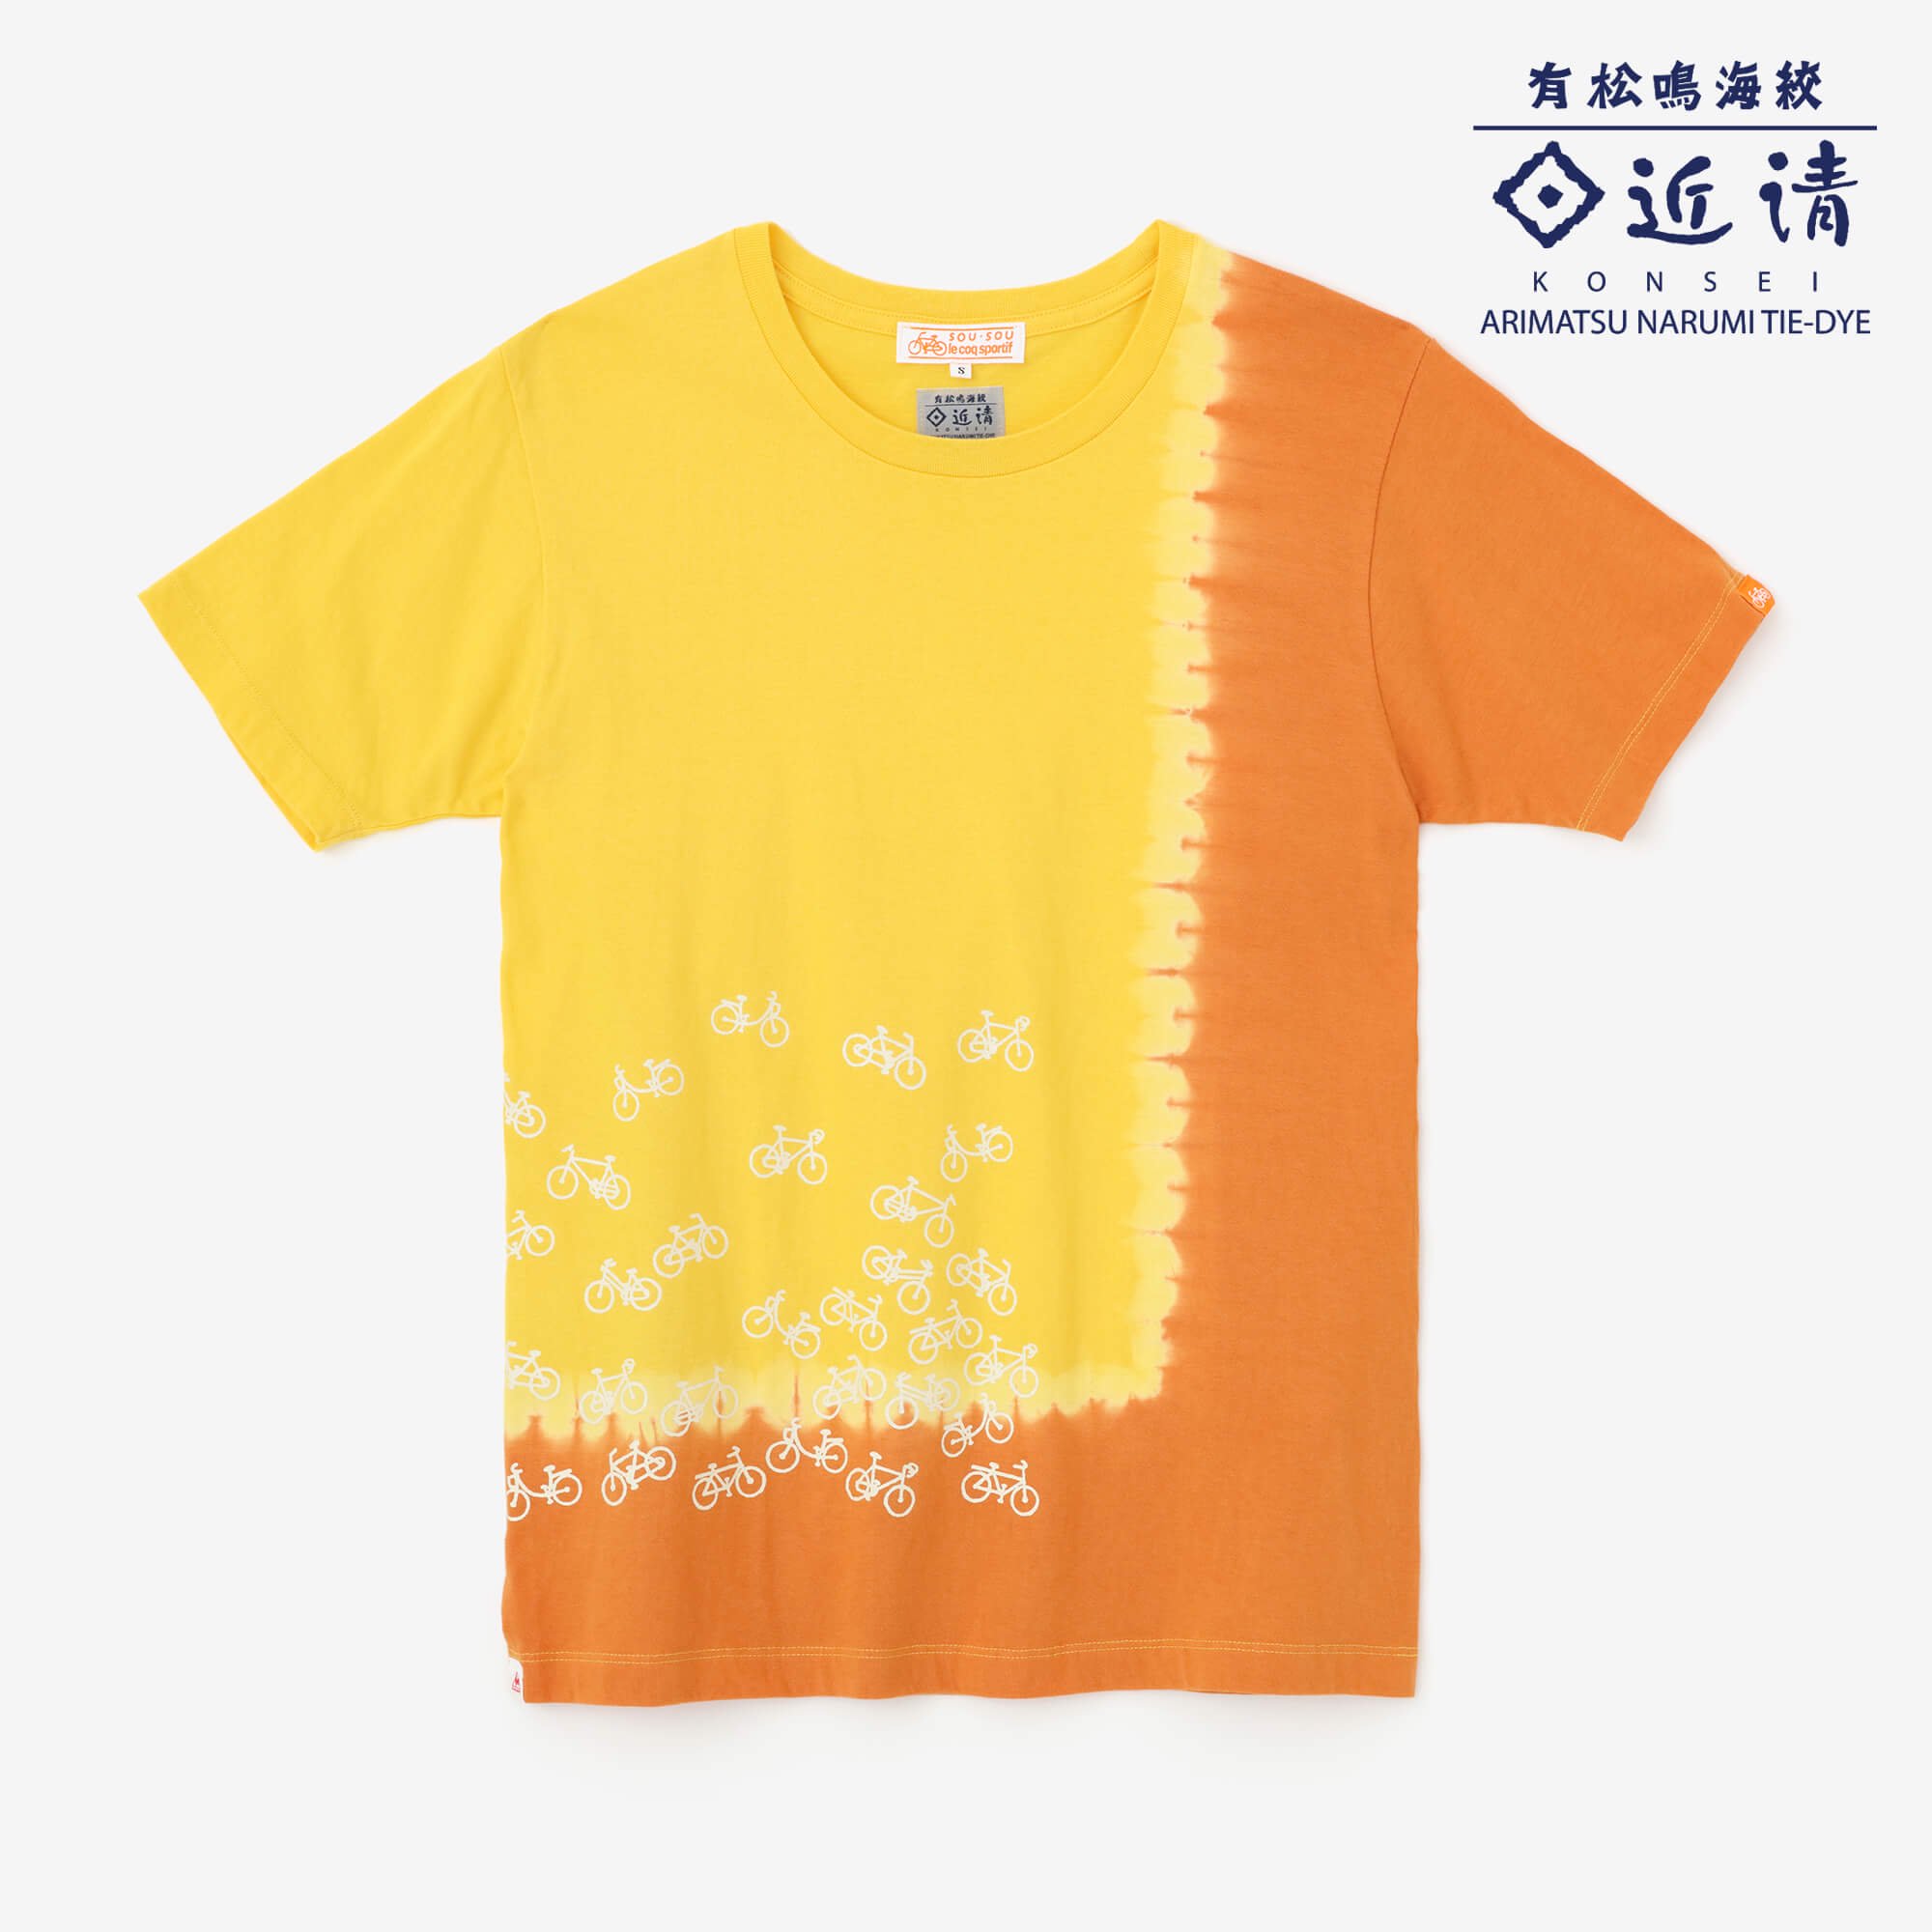 予約10 Off 近清絞り 染め分け半袖tシャツ チャリンチャリン デイジー オレンジ 6月末発送予定 Sou Sou Netshop ソウソウ 新しい日本文化の創造